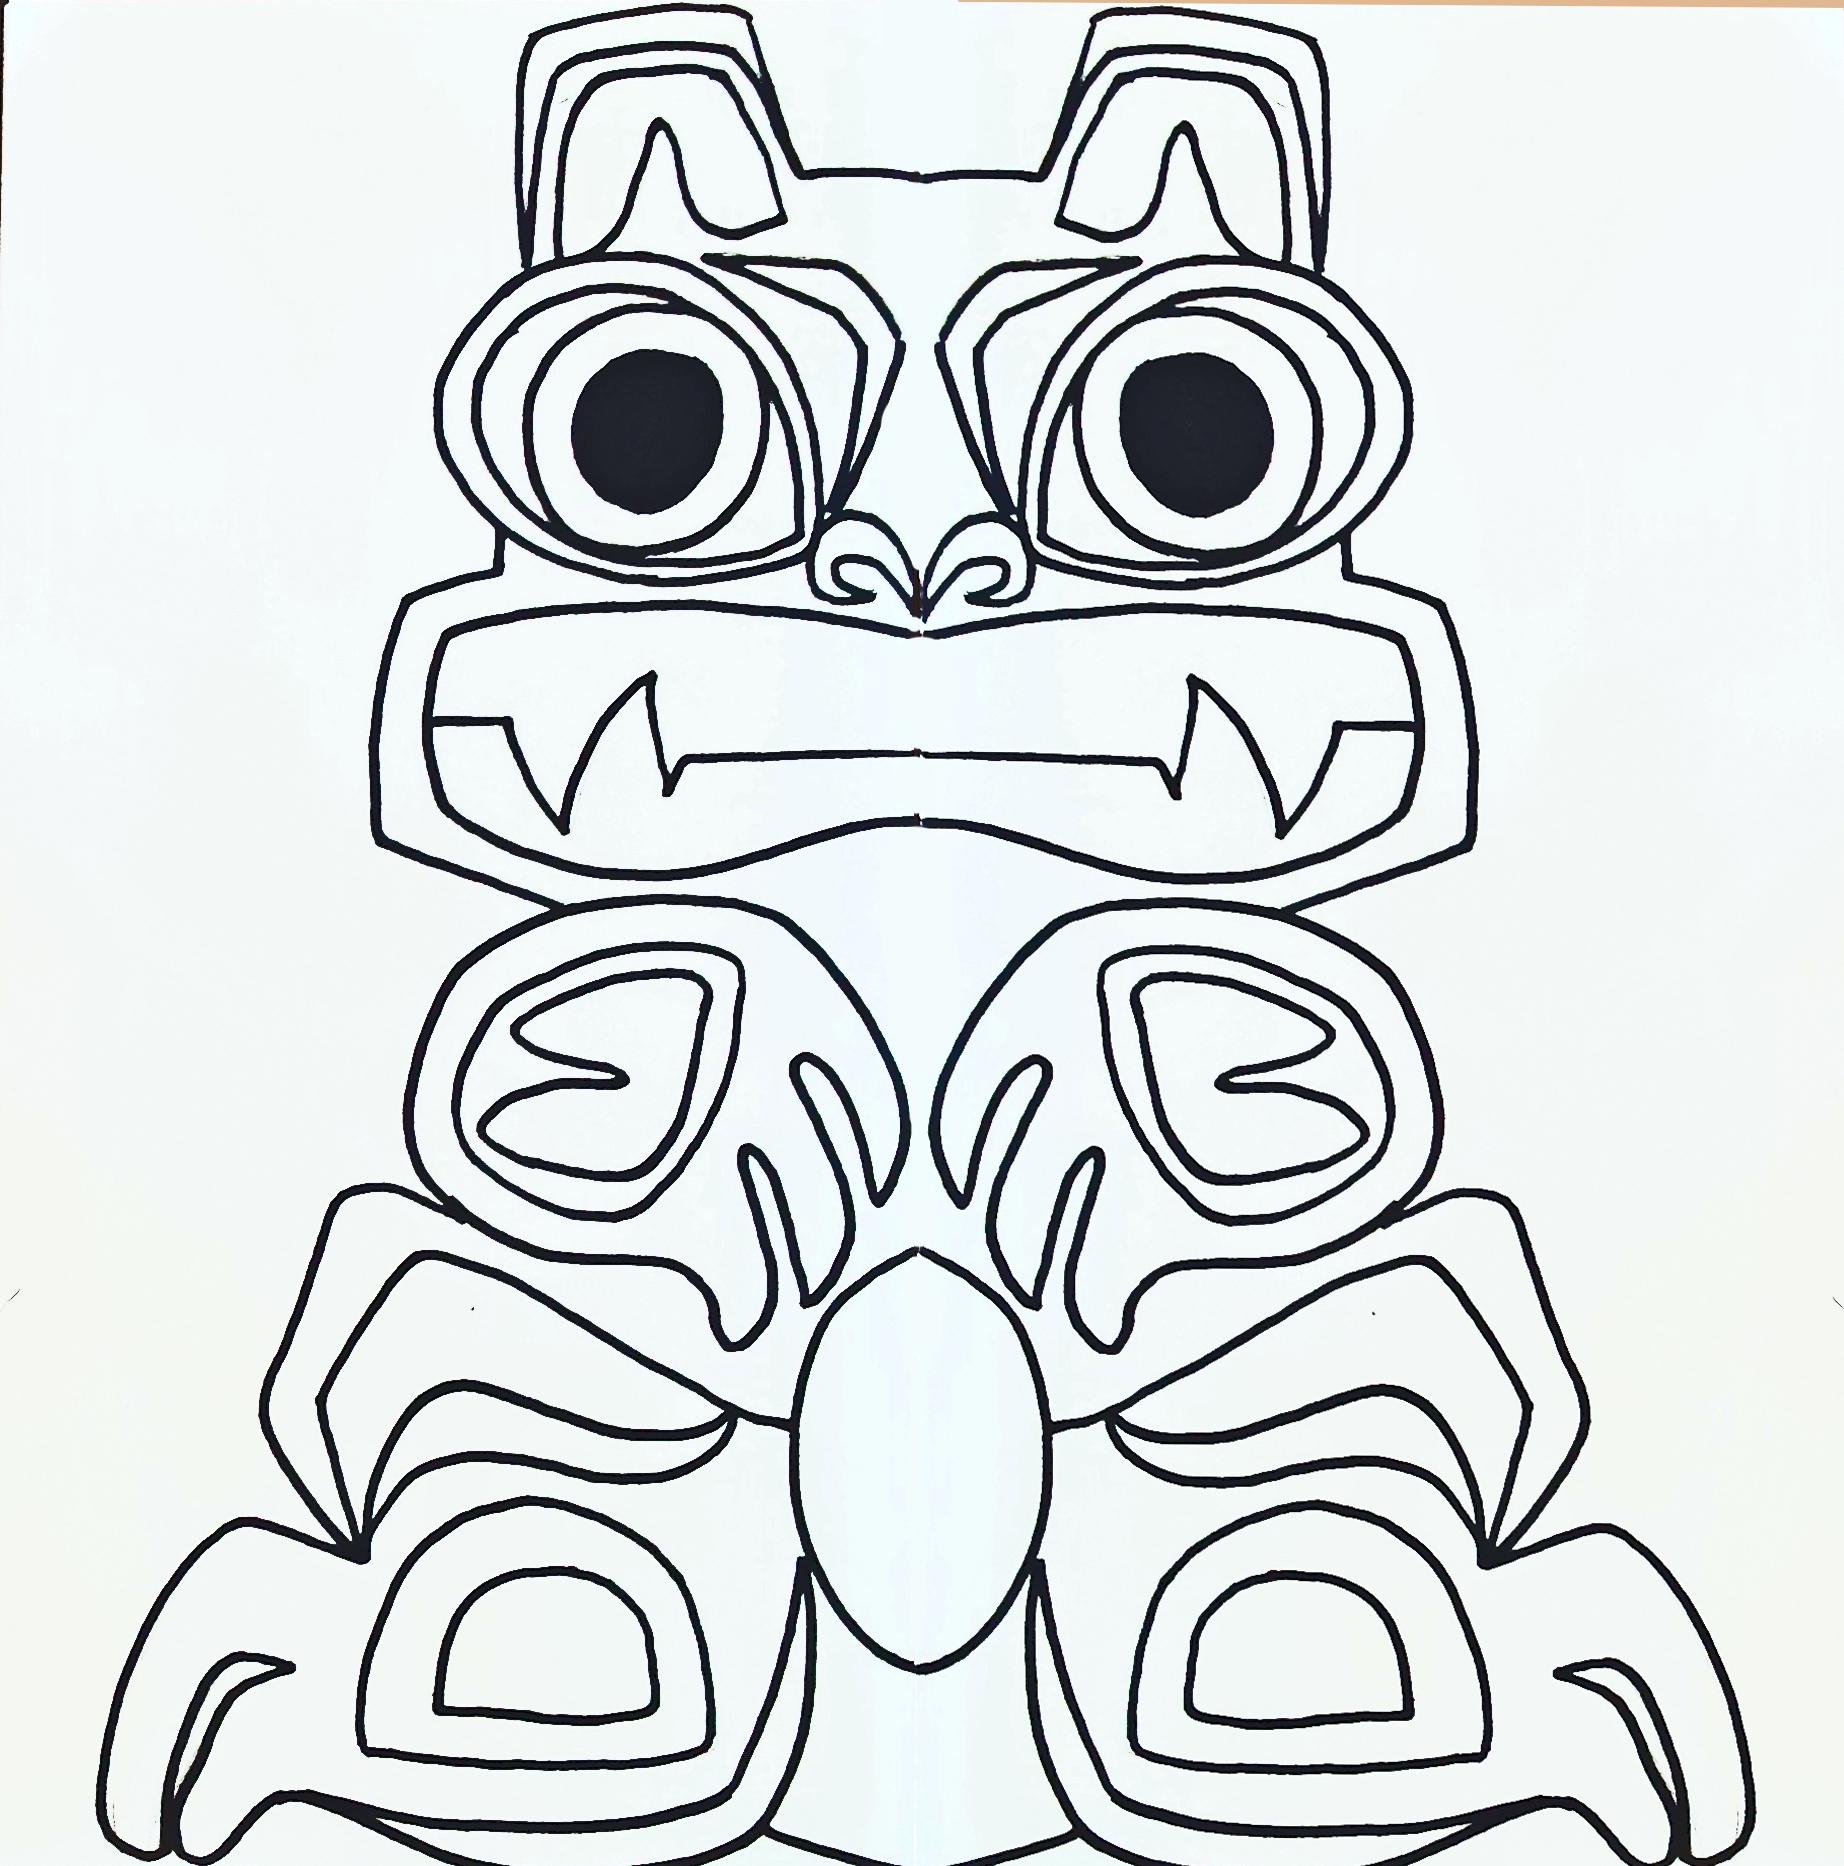 Printable Totem Pole Symbols - Printable World Holiday